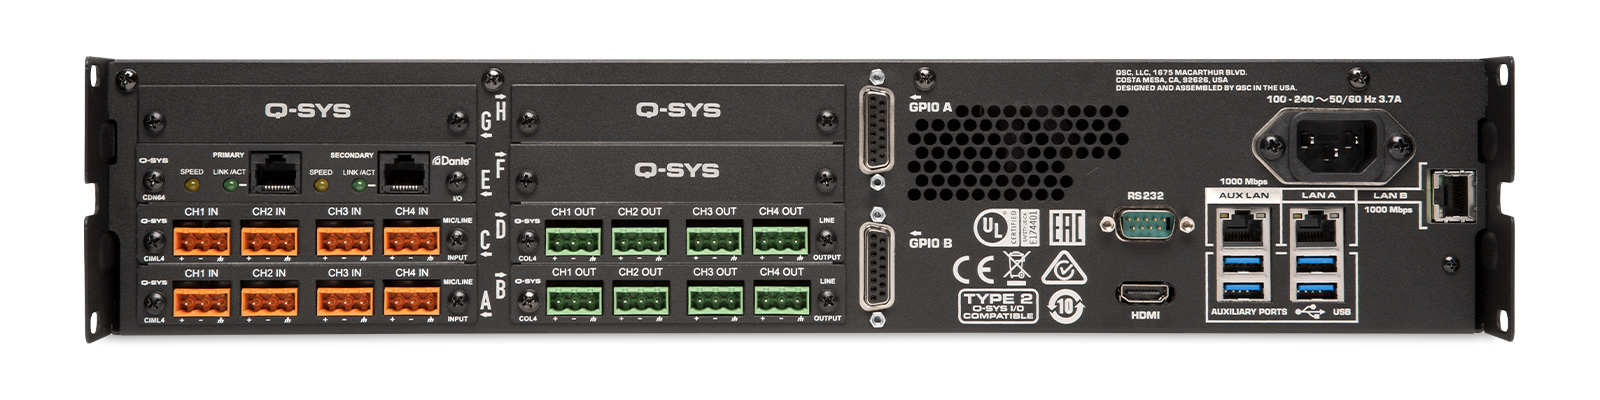 Contrôleurs à écran tactile en réseau - Produits, périphériques et  accessoires - Q-SYS - Produits - Systèmes - QSC French Language Site - QSC